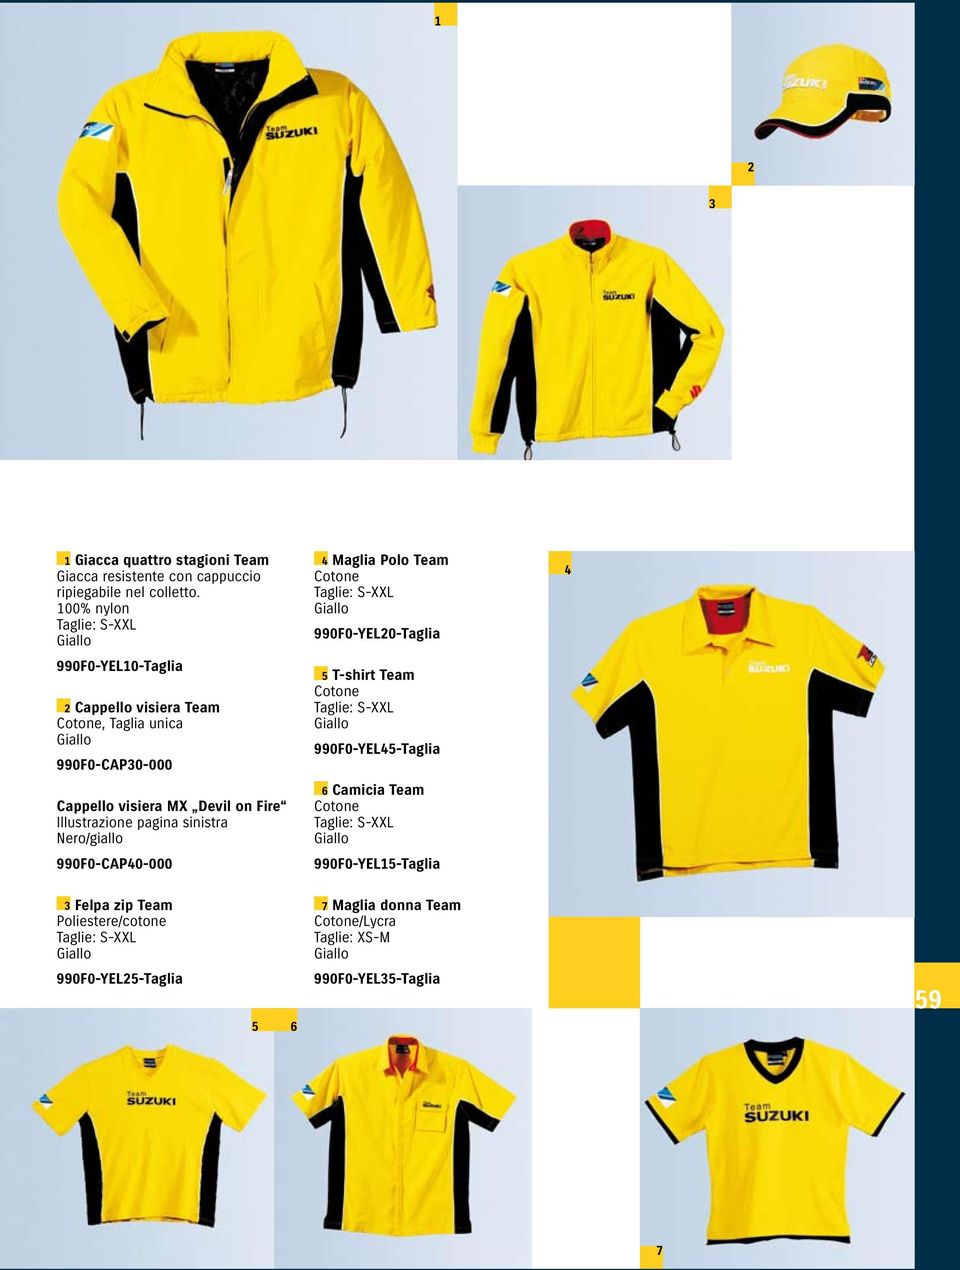 Illustrazione pagina sinistra Nero/giallo 990F0-CAP40-000 4 Maglia Polo Team Cotone Taglie: S-XXL Giallo 990F0-YEL20-Taglia 5 T-shirt Team Cotone Taglie: S-XXL